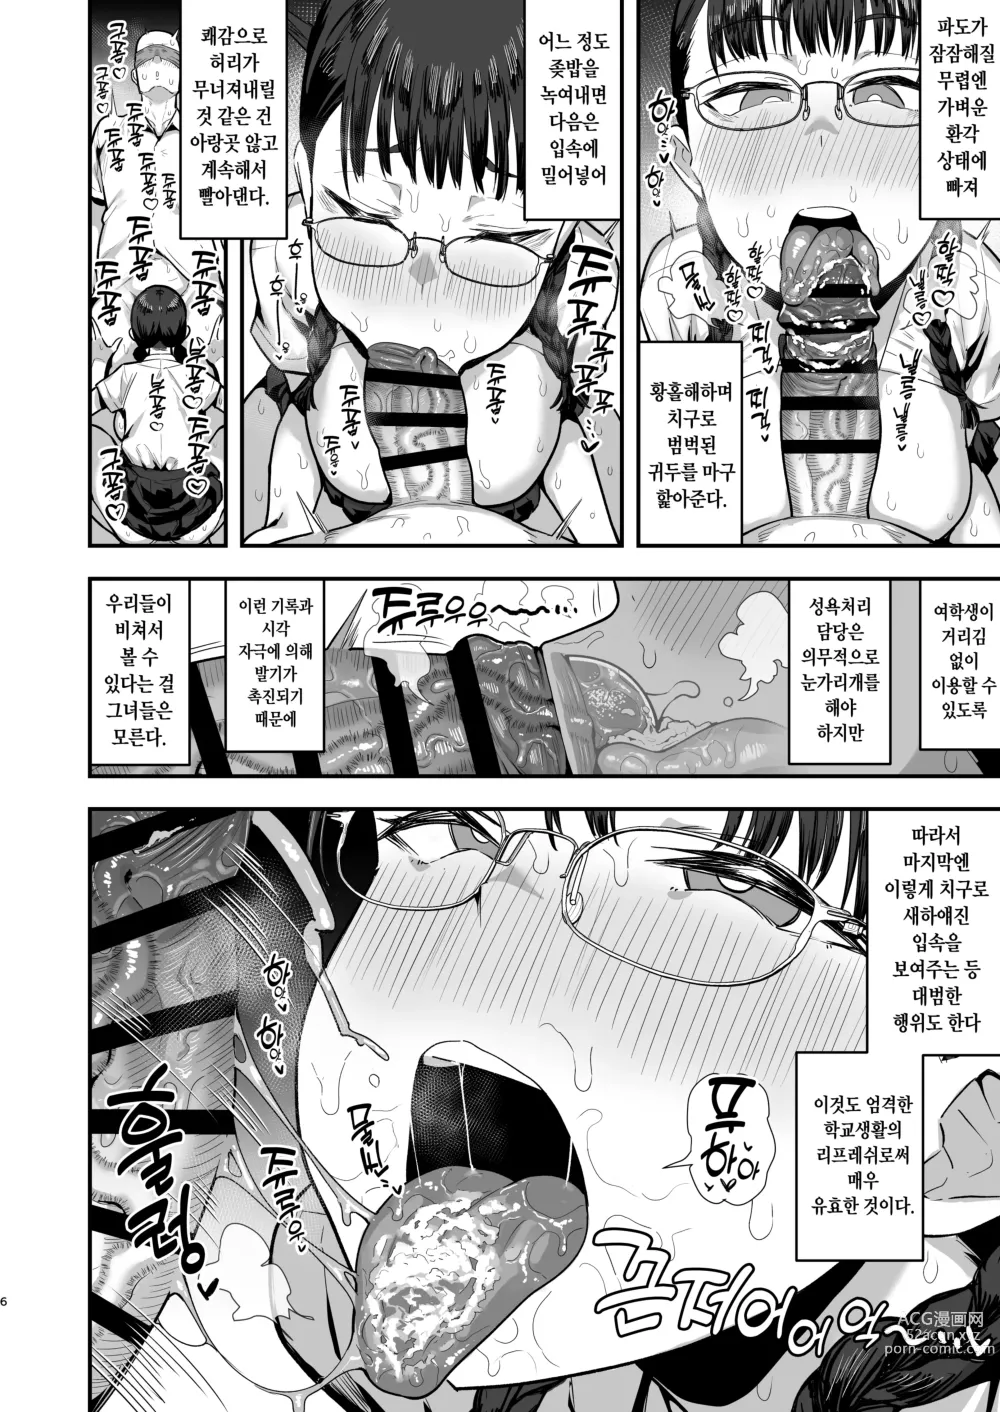 Page 8 of doujinshi 여학교의 성욕처리담당 의 으로 편입한 남학생이 작성한 기록